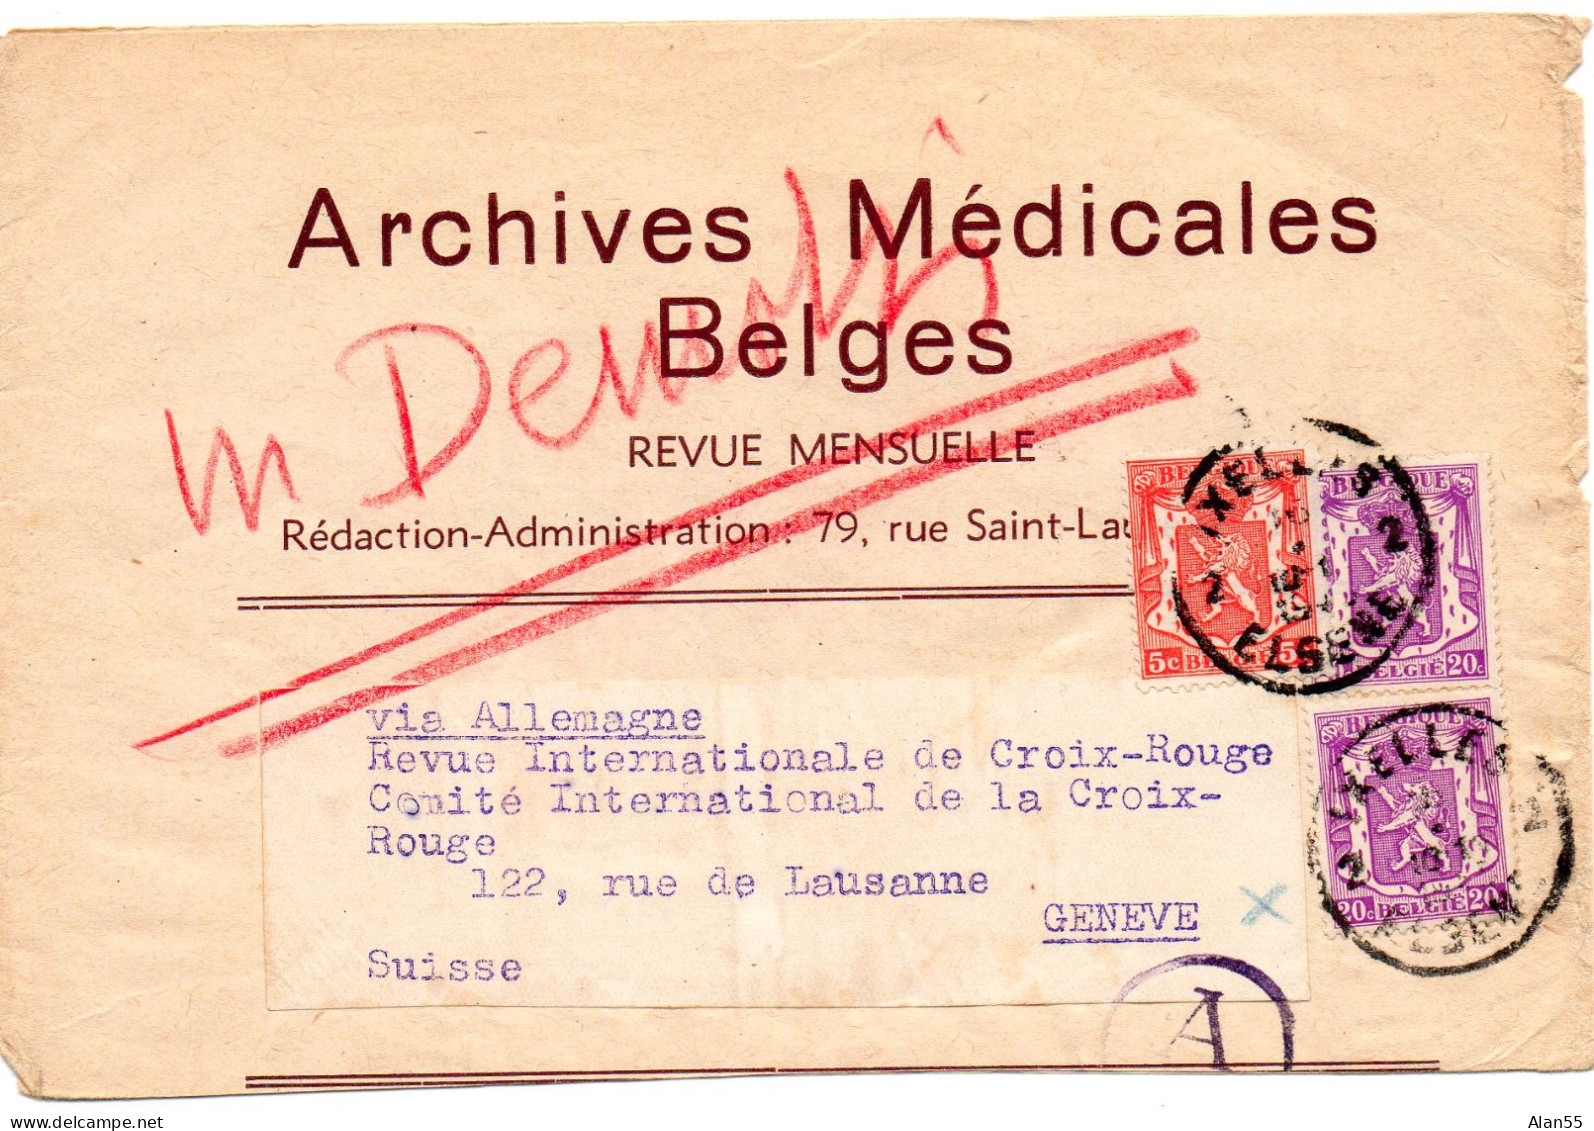 BELGIQUE.1941. "ARCHIVES MEDICALES BELGES". BANDE JOURNAL. CENSURE ALLEMANDE POUR LA SUISSE.Verso: Publicité. - Newspaper [JO]